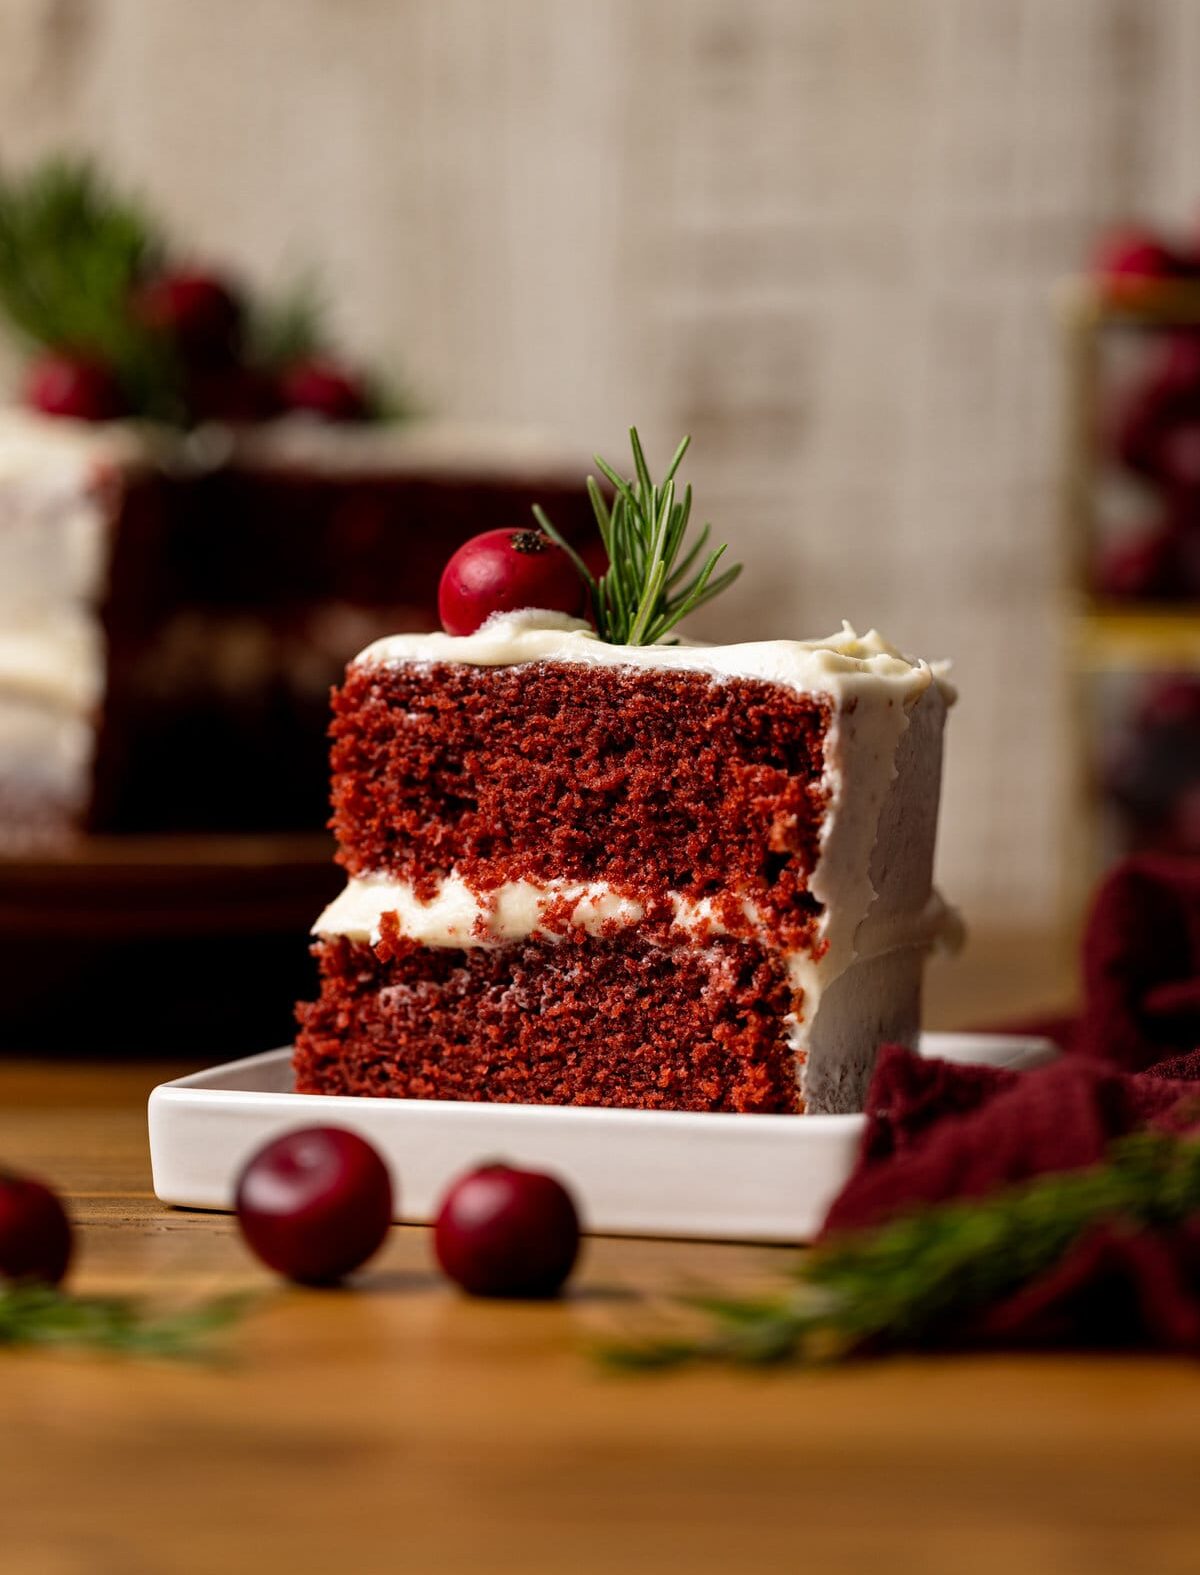 Red Velevt Cake Recipe: How to make Christmas Red Velvet Cake Recipe at  Home